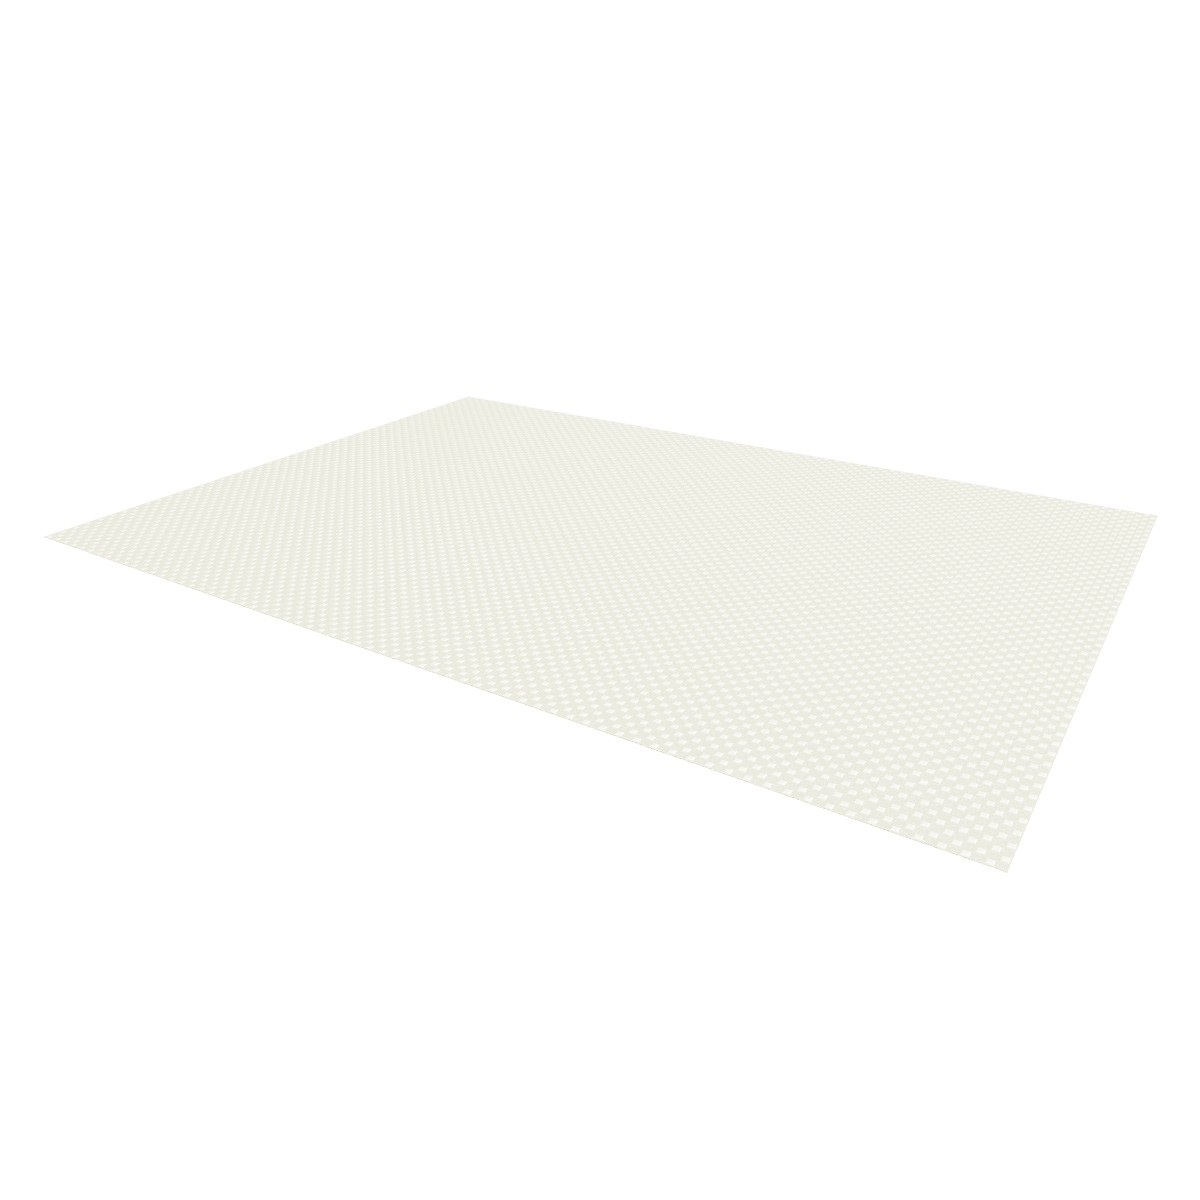 Protiskluzová podložka FlexiSPACE 150 x 50 cm, bílá